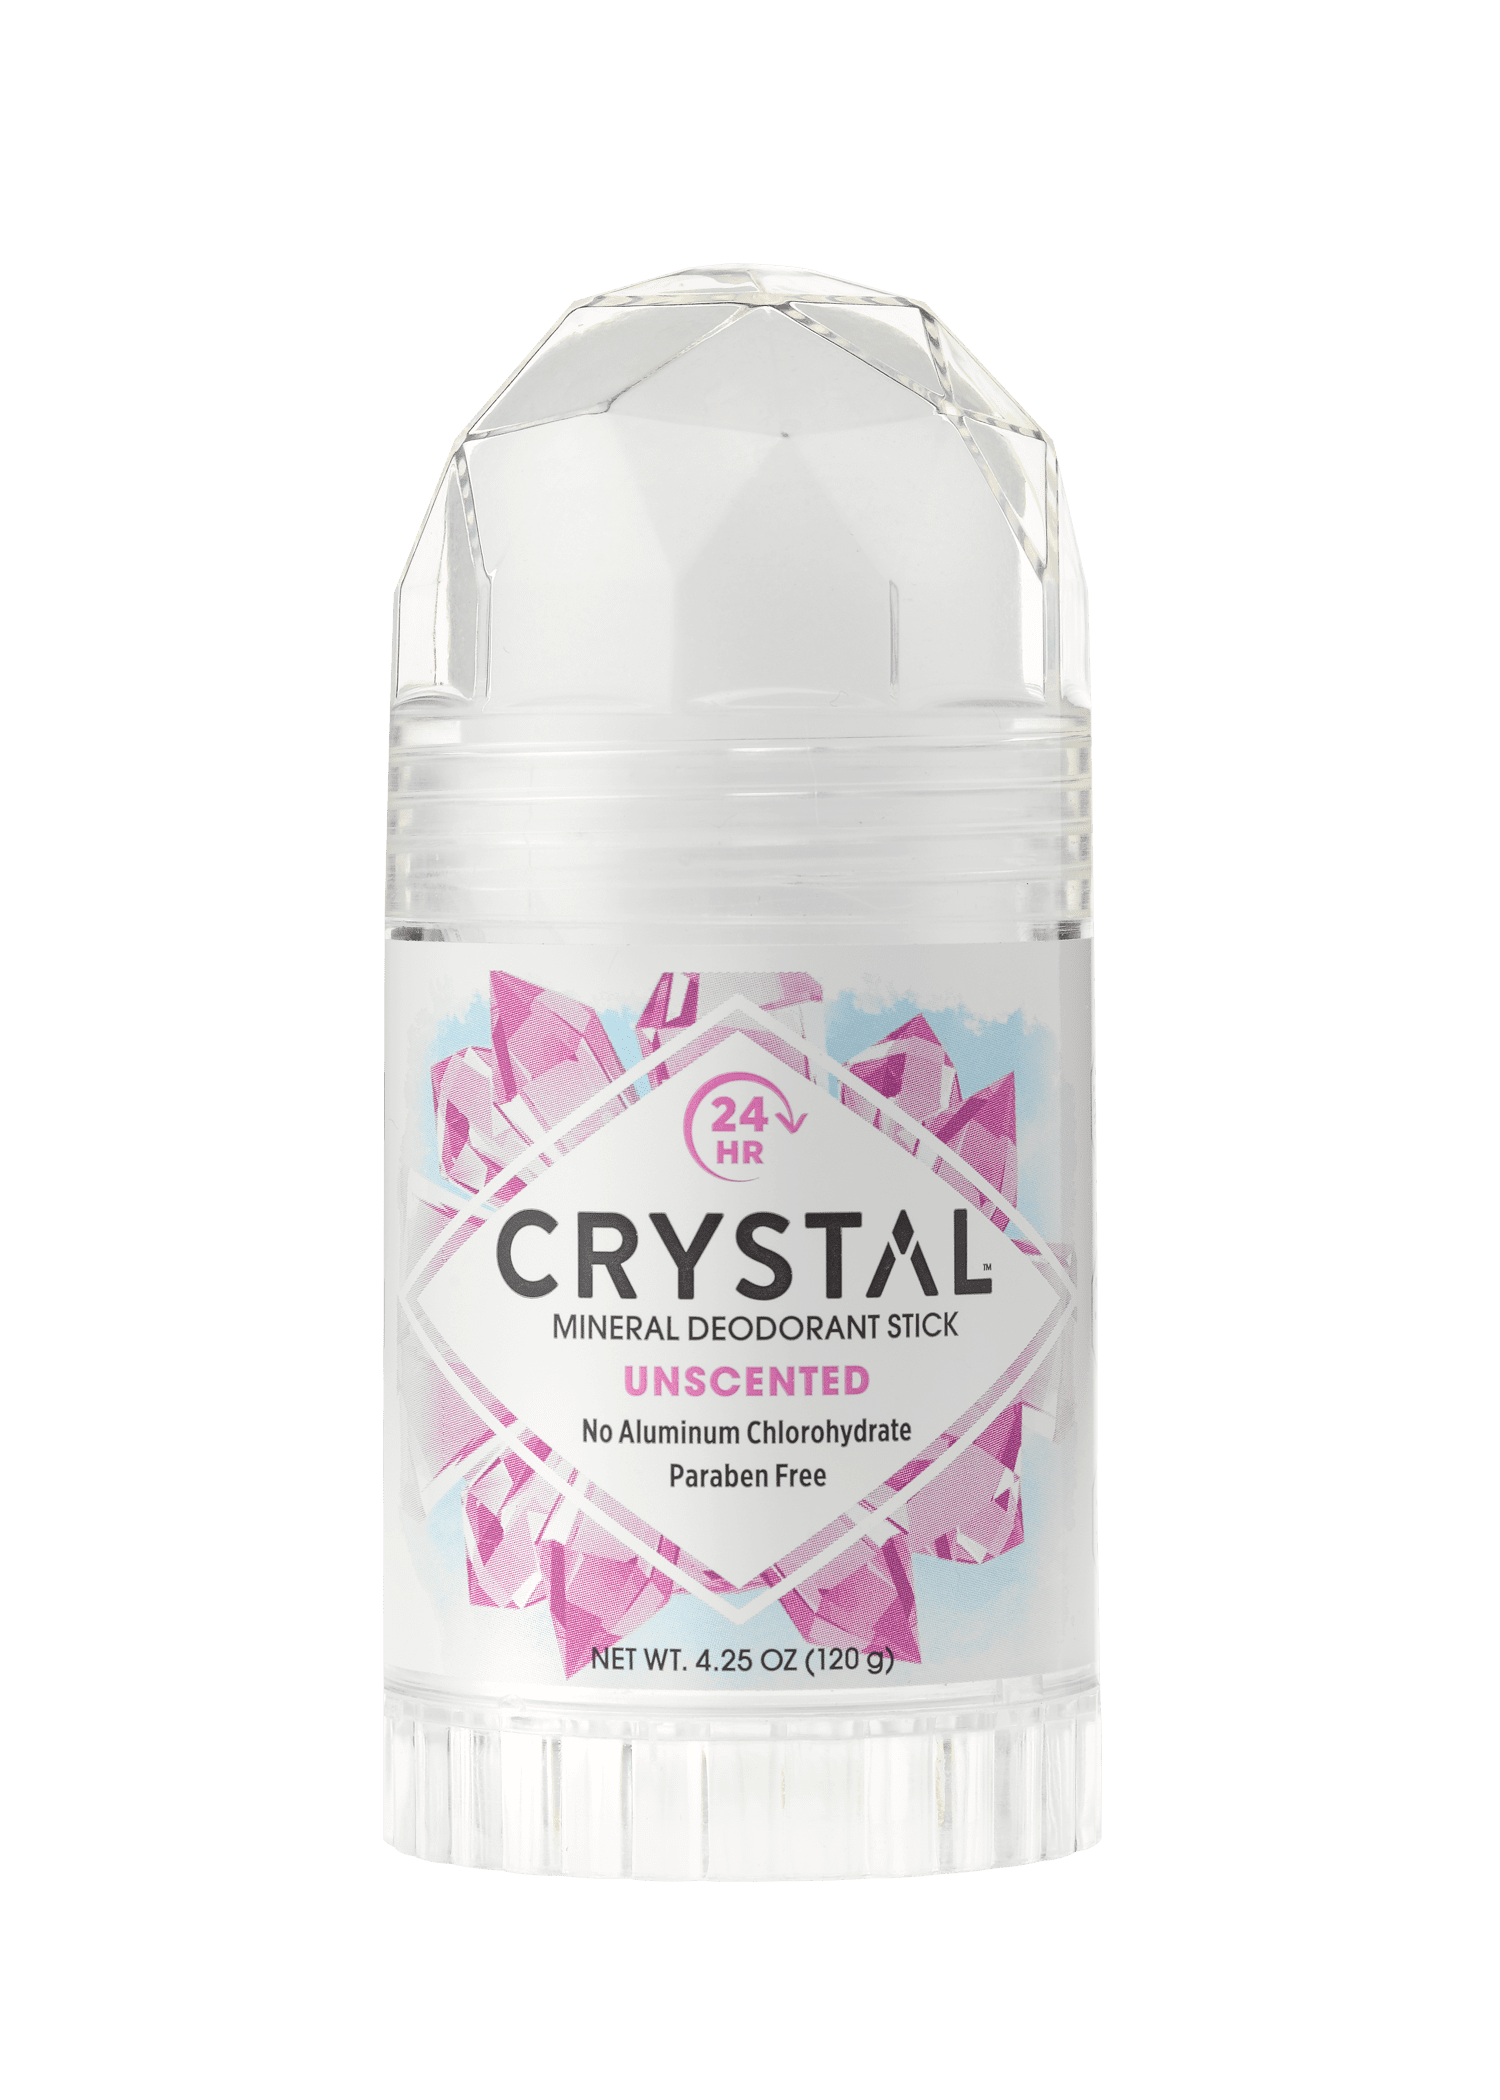 Стики для тела. Дезодорант Crystal body Deodorant. Crystal body Deodorant Stick 120g. Кристал дезодорант Кристалл. Дезодорант карандаш body Crystal 120.